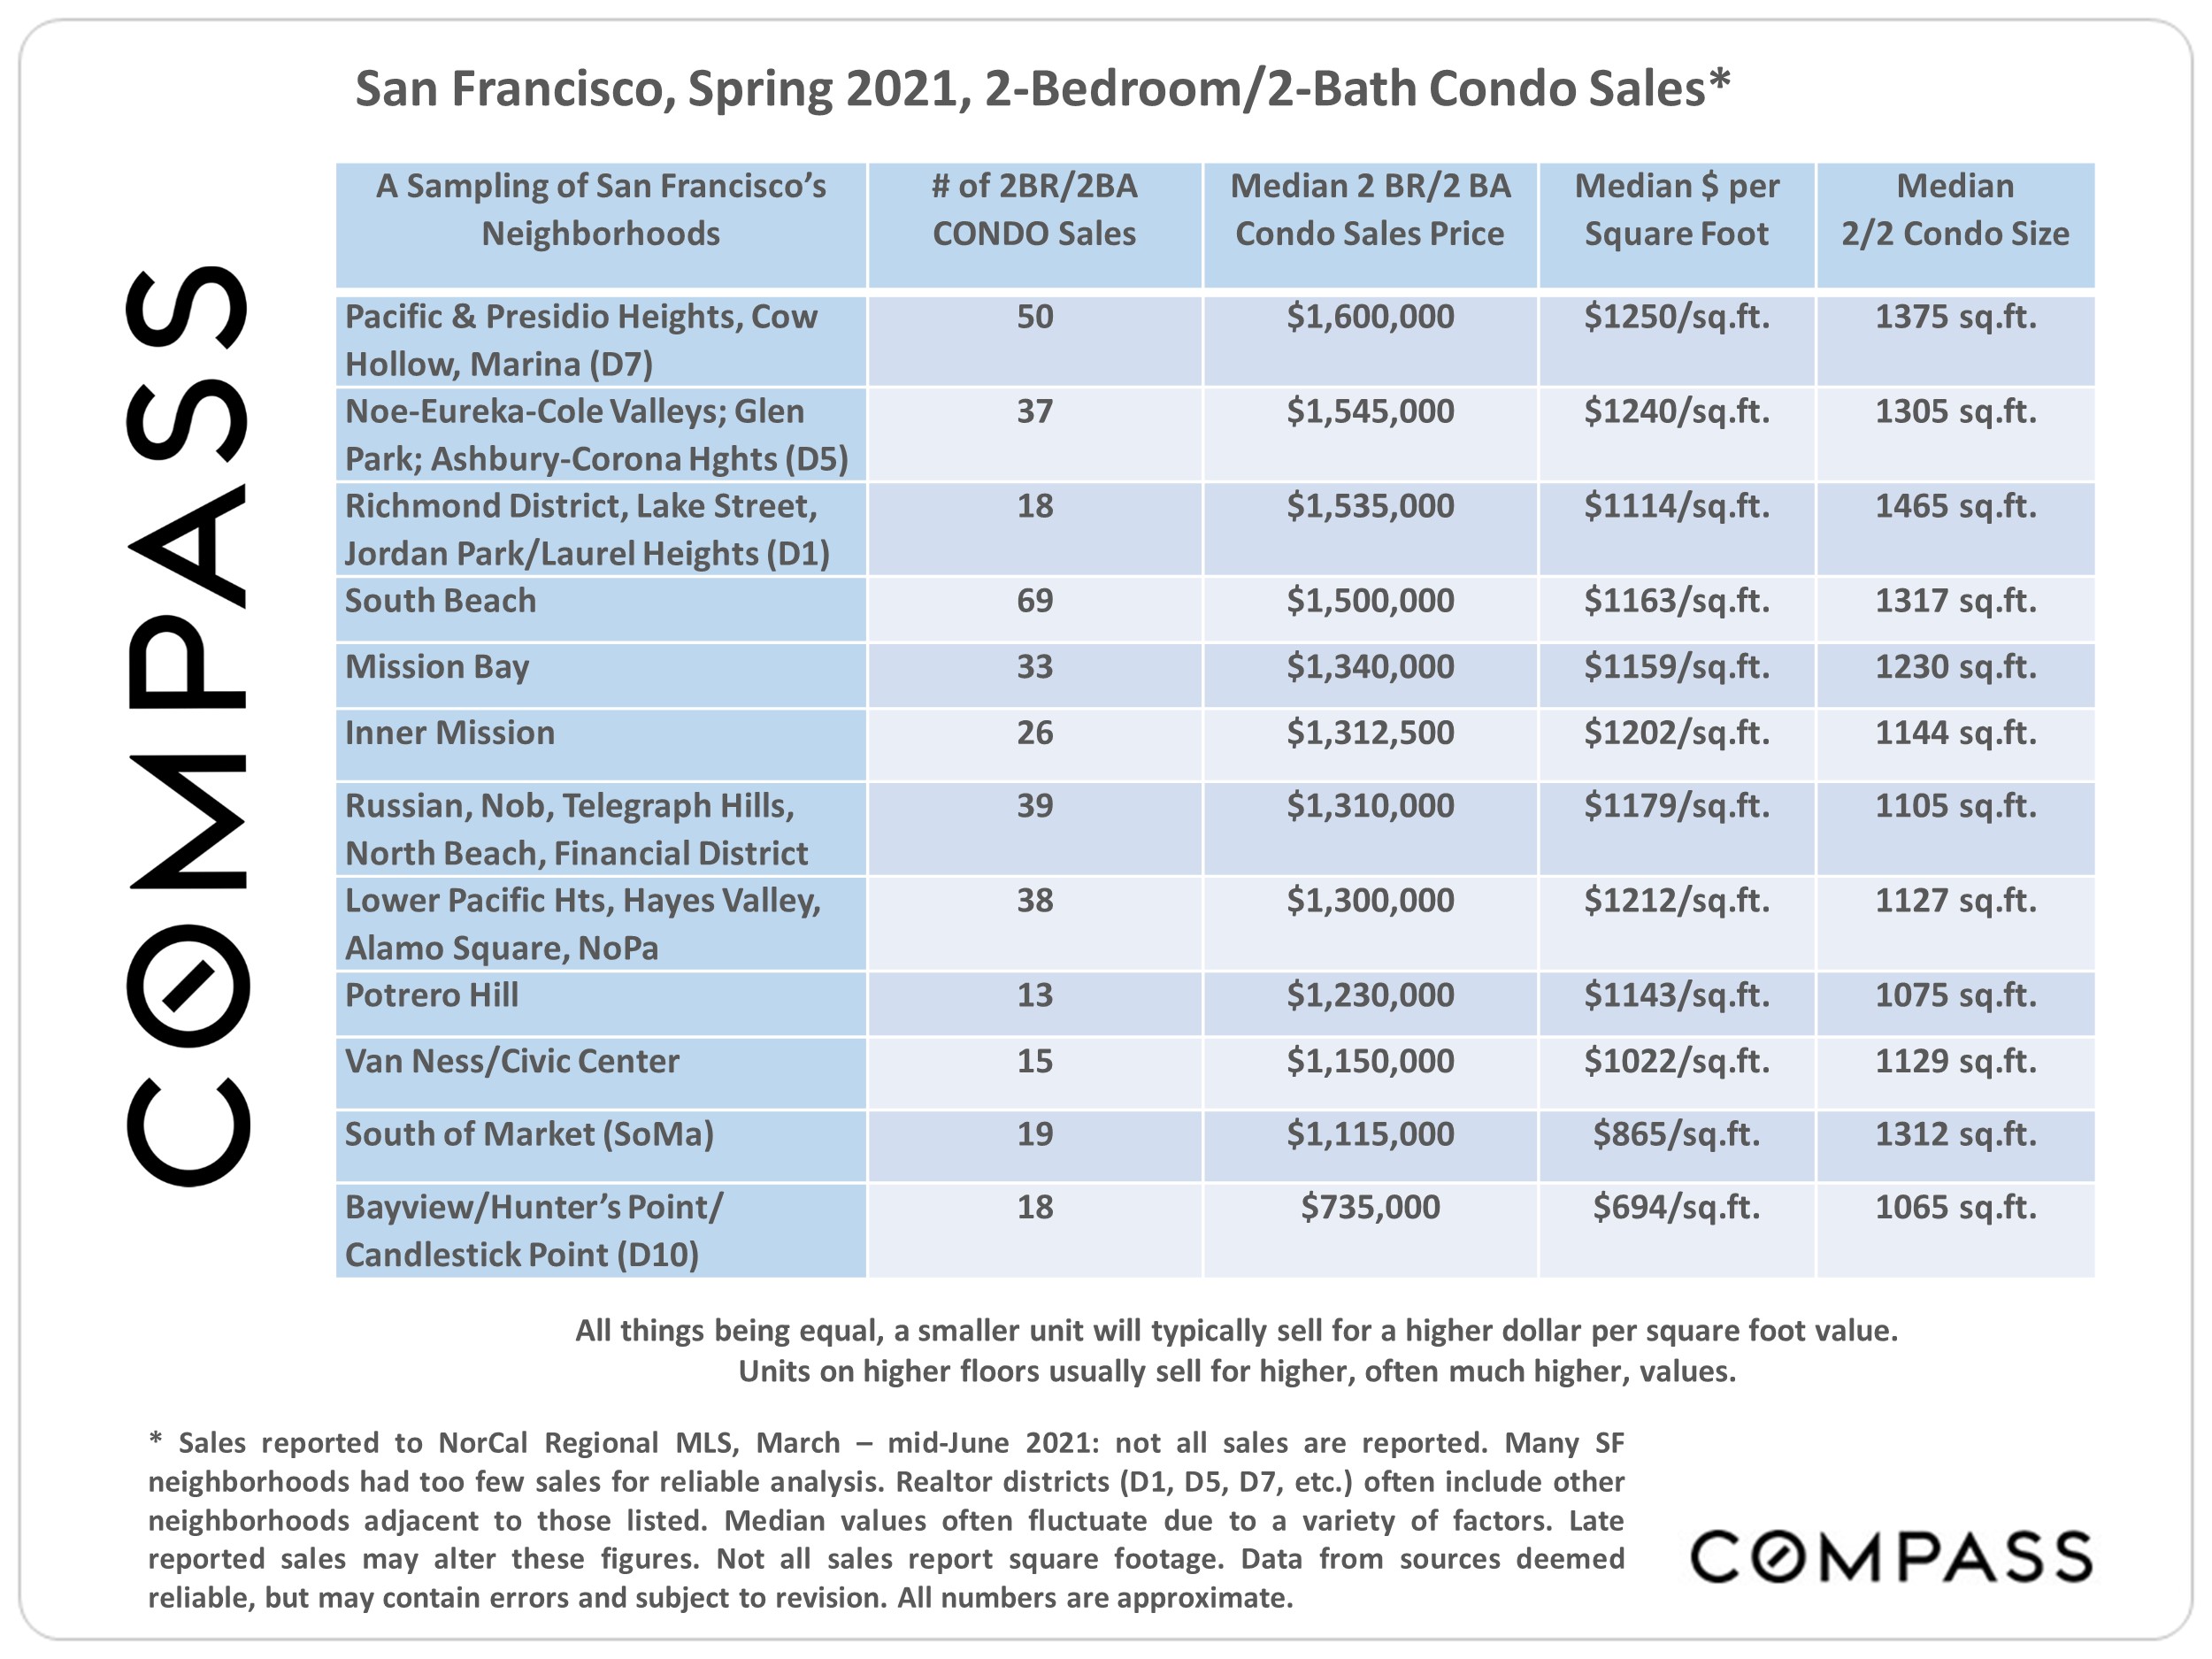 List of San Francisco 2BR, 2Bath Condo Sales, Spring 2021